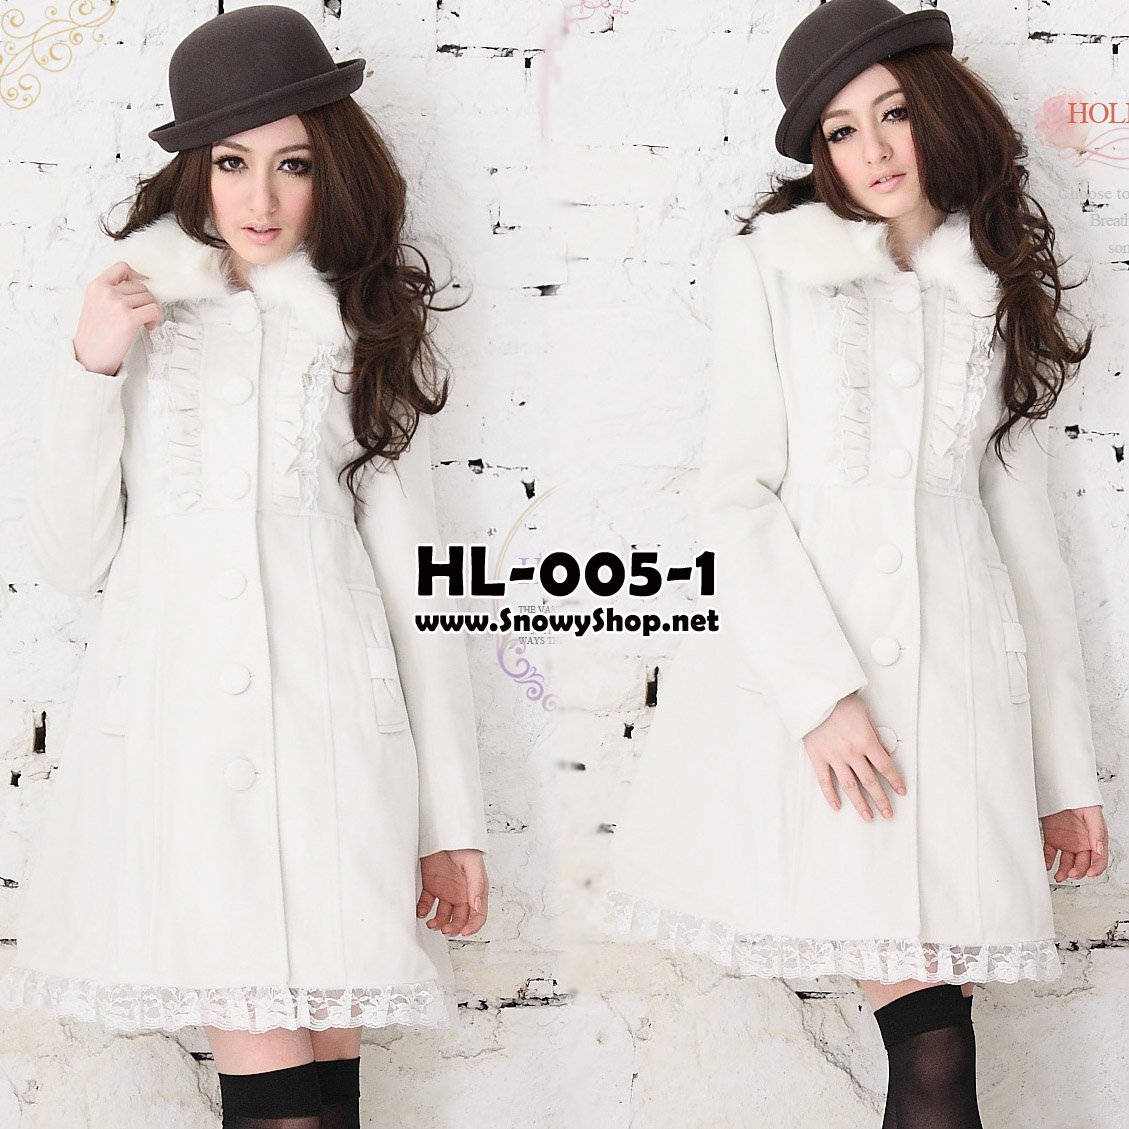 [[*พร้อมส่ง S,M]] [coat] [HL-005-1] Holiday lady เสื้อโค้ทกันหนาวสีขาวผ้าวูลหนา ปกคอขนเฟอร์ถอดออกได้ ปลายกระโปงต่อผ้าลูกไม้น่ารัก